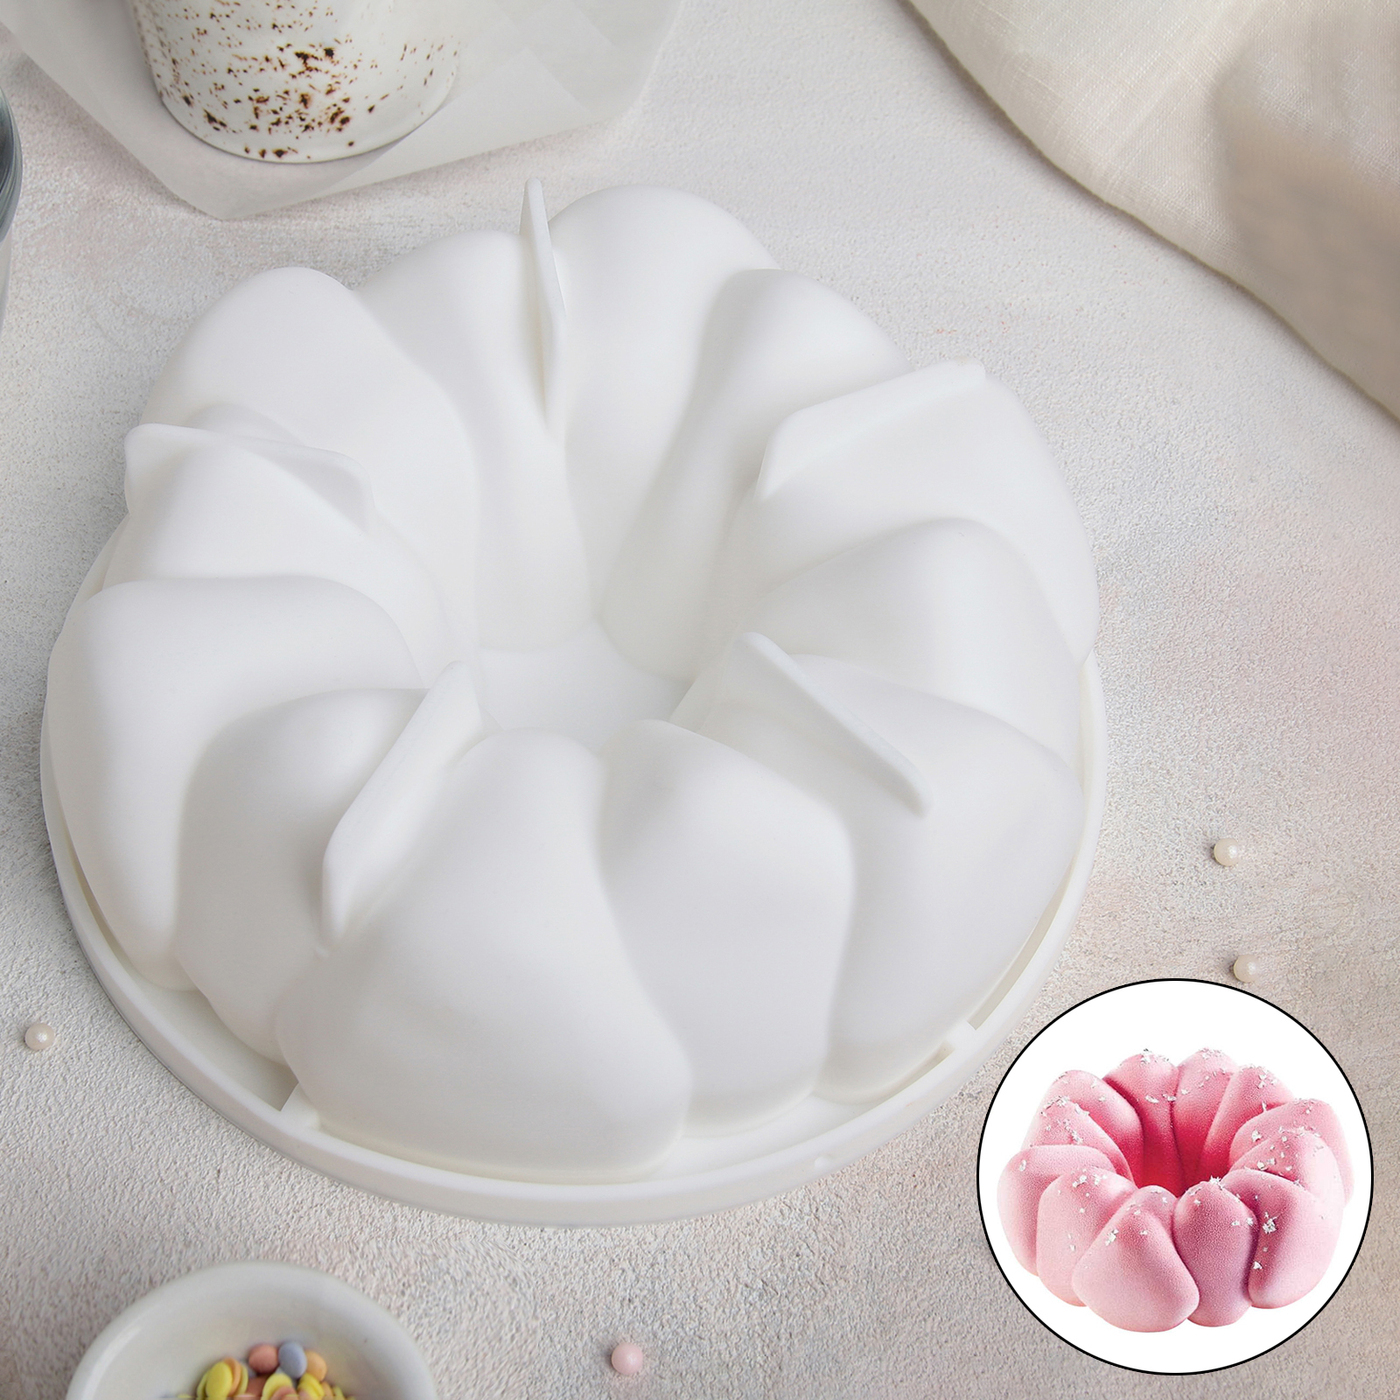 Форма для муссовых десертов и выпечки «Гранатовый браслет», 19.5×19.5×6.9 см, цвет белый